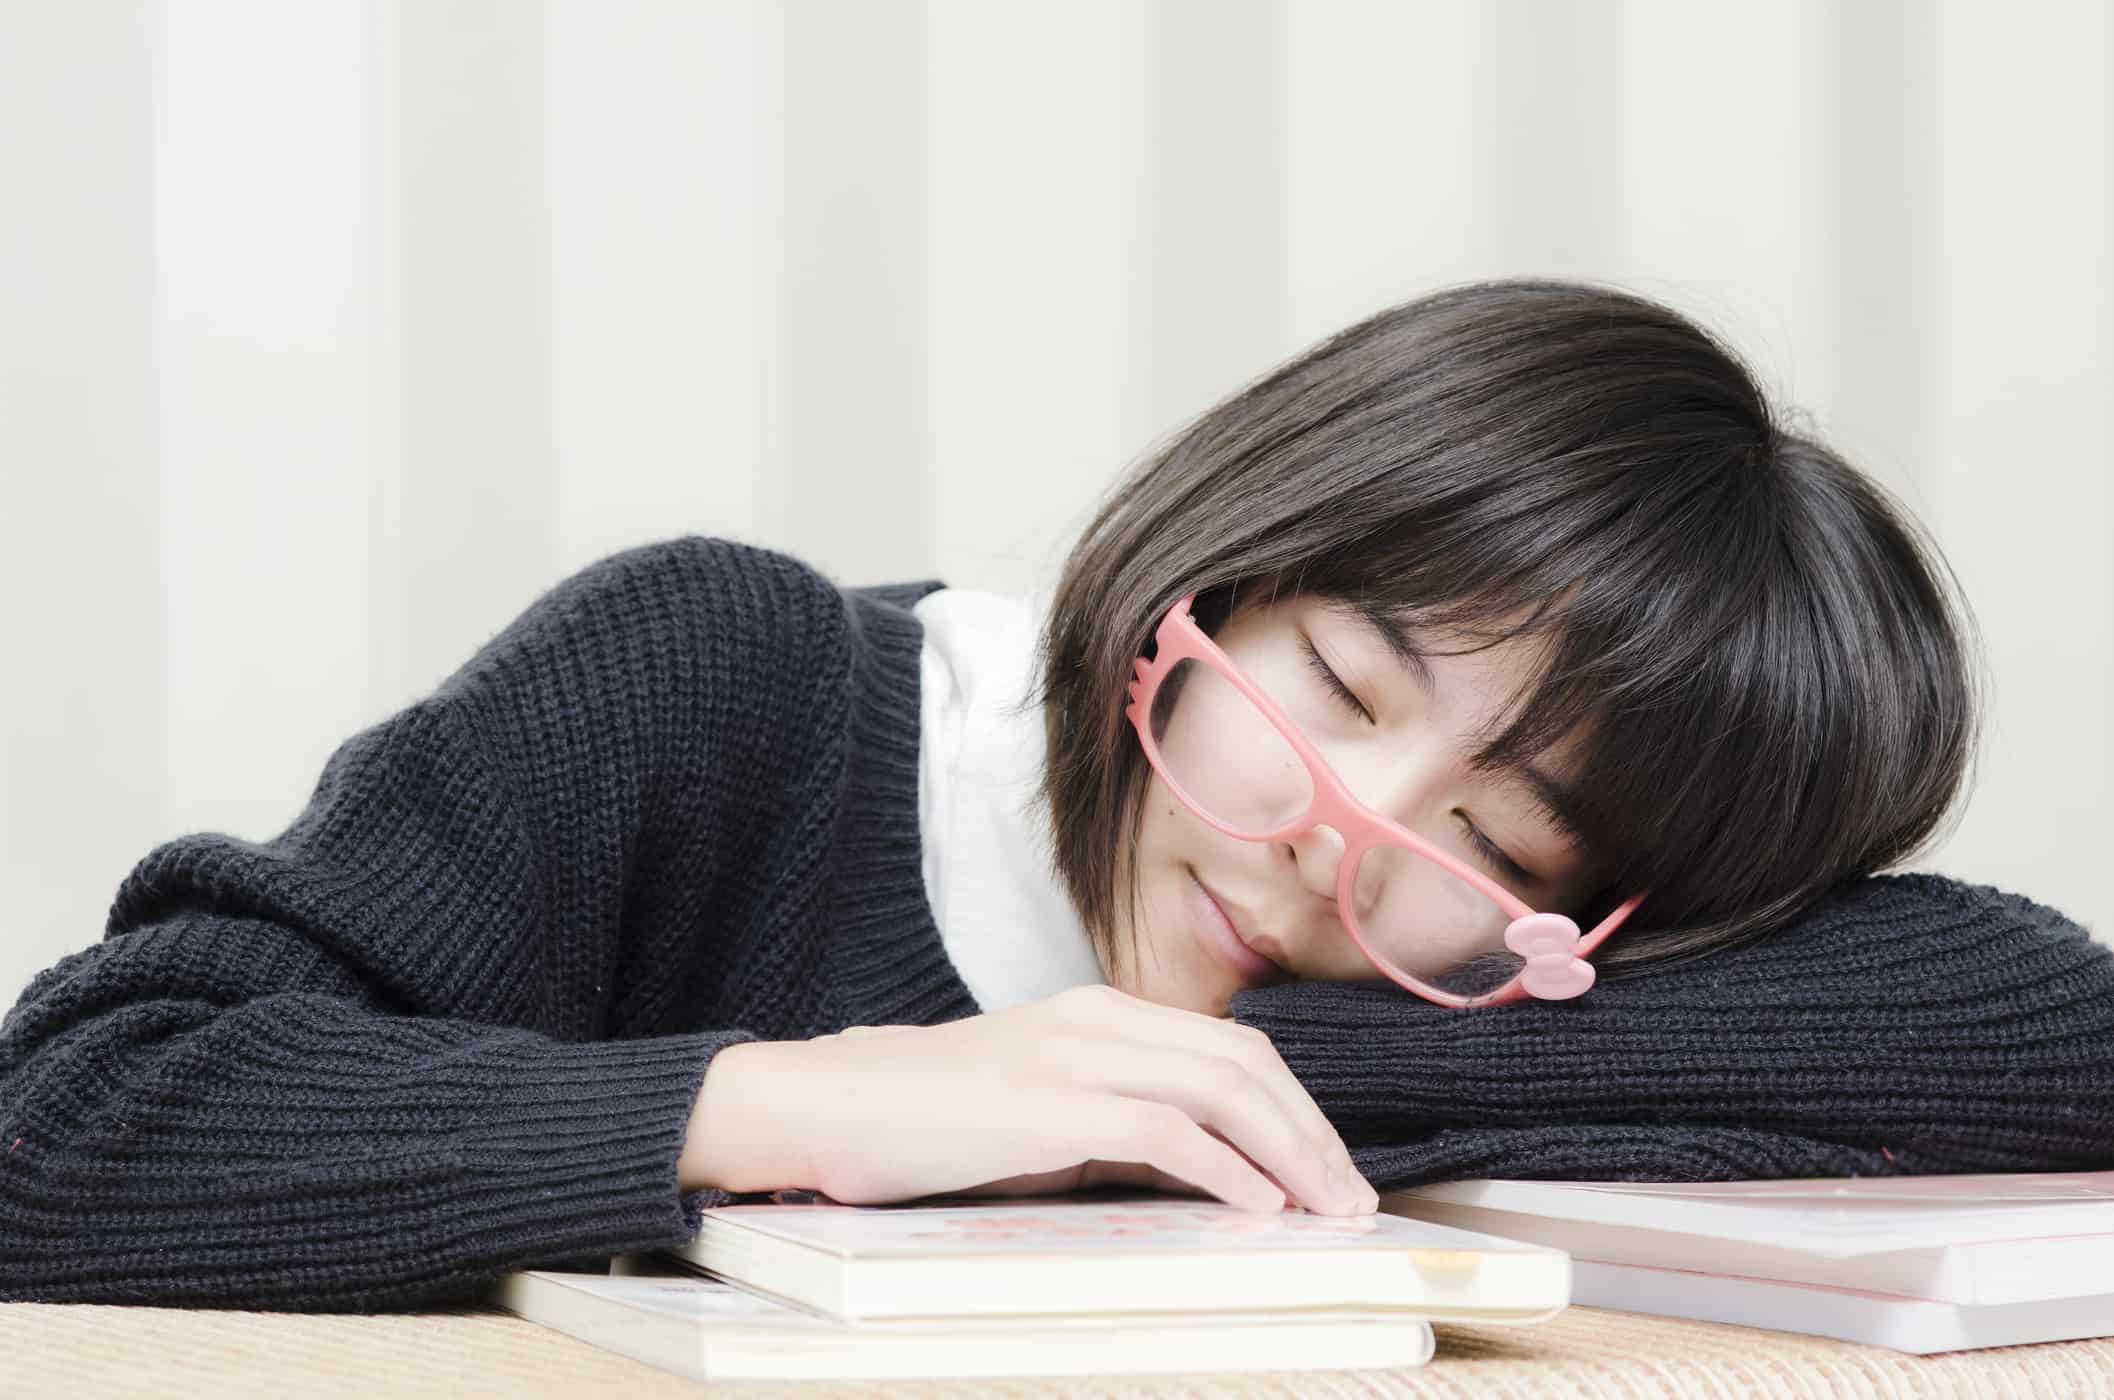 공부하는 동안 졸음을 효과적으로 제거할 수 있는 6가지 방법